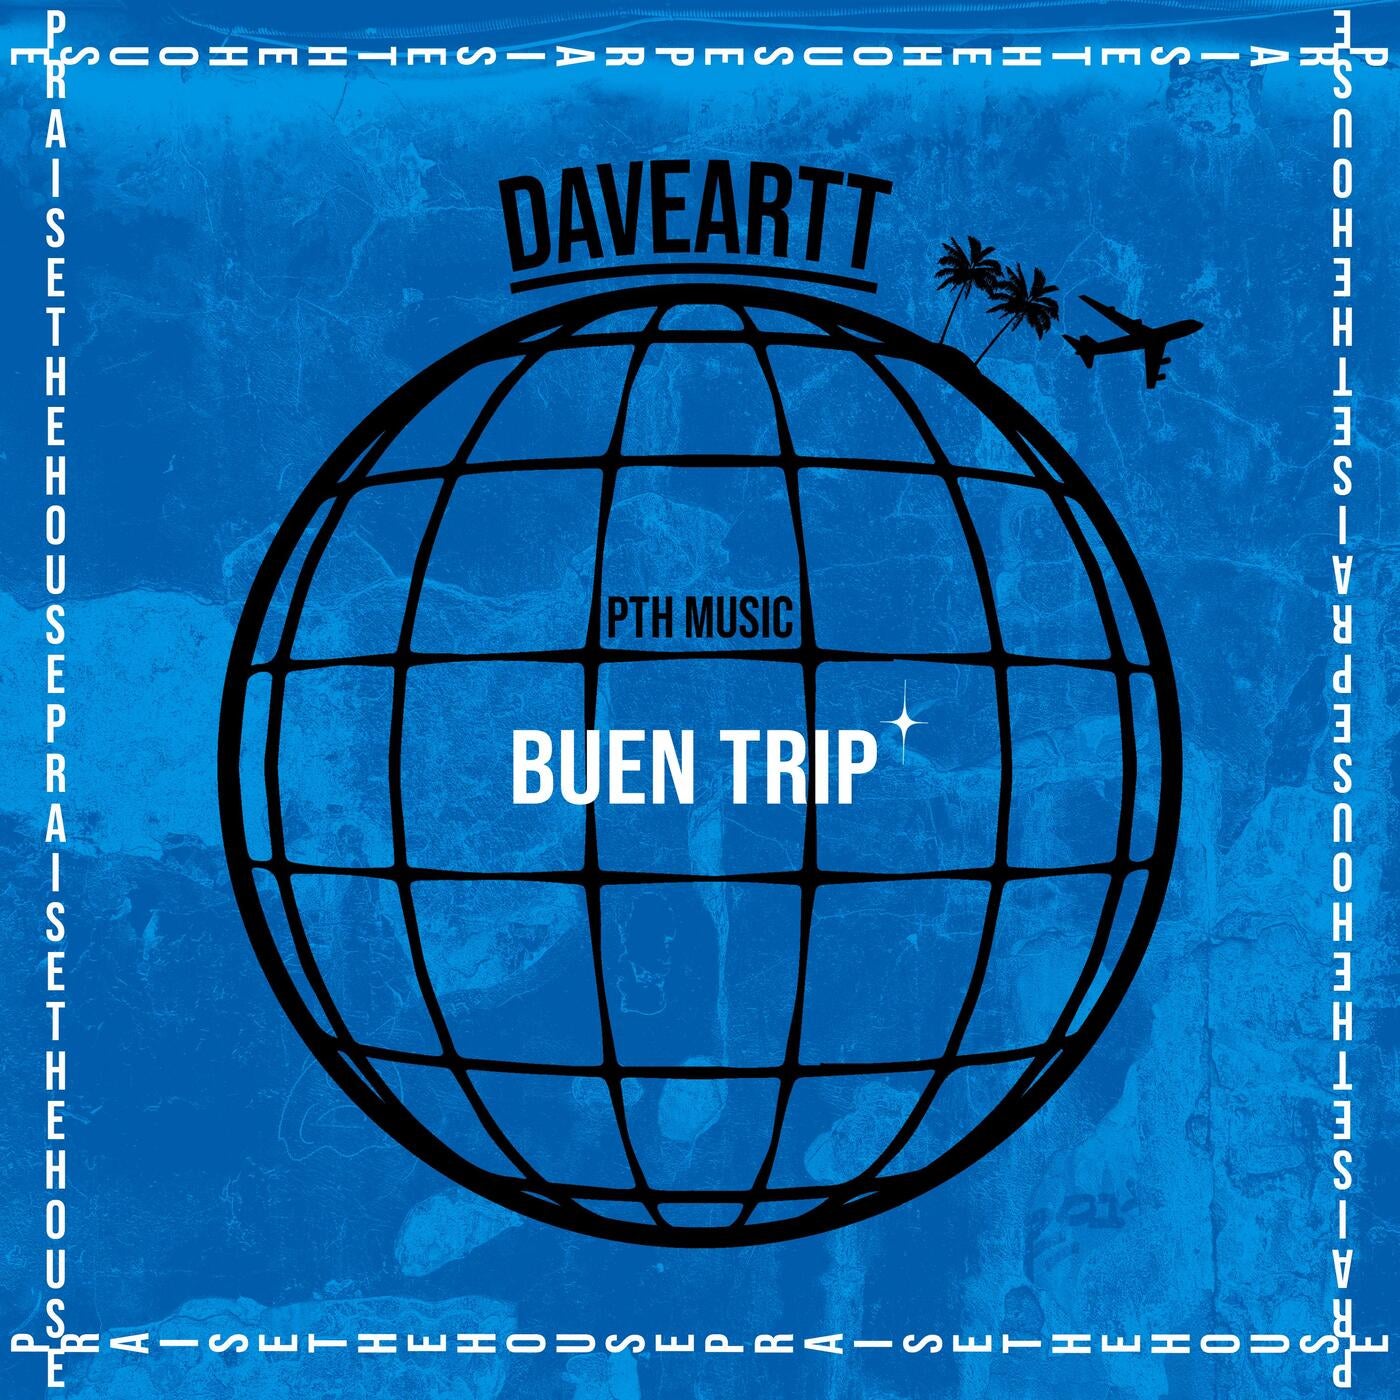 Cover - Daveartt - DESPEGUE (Original Mix)